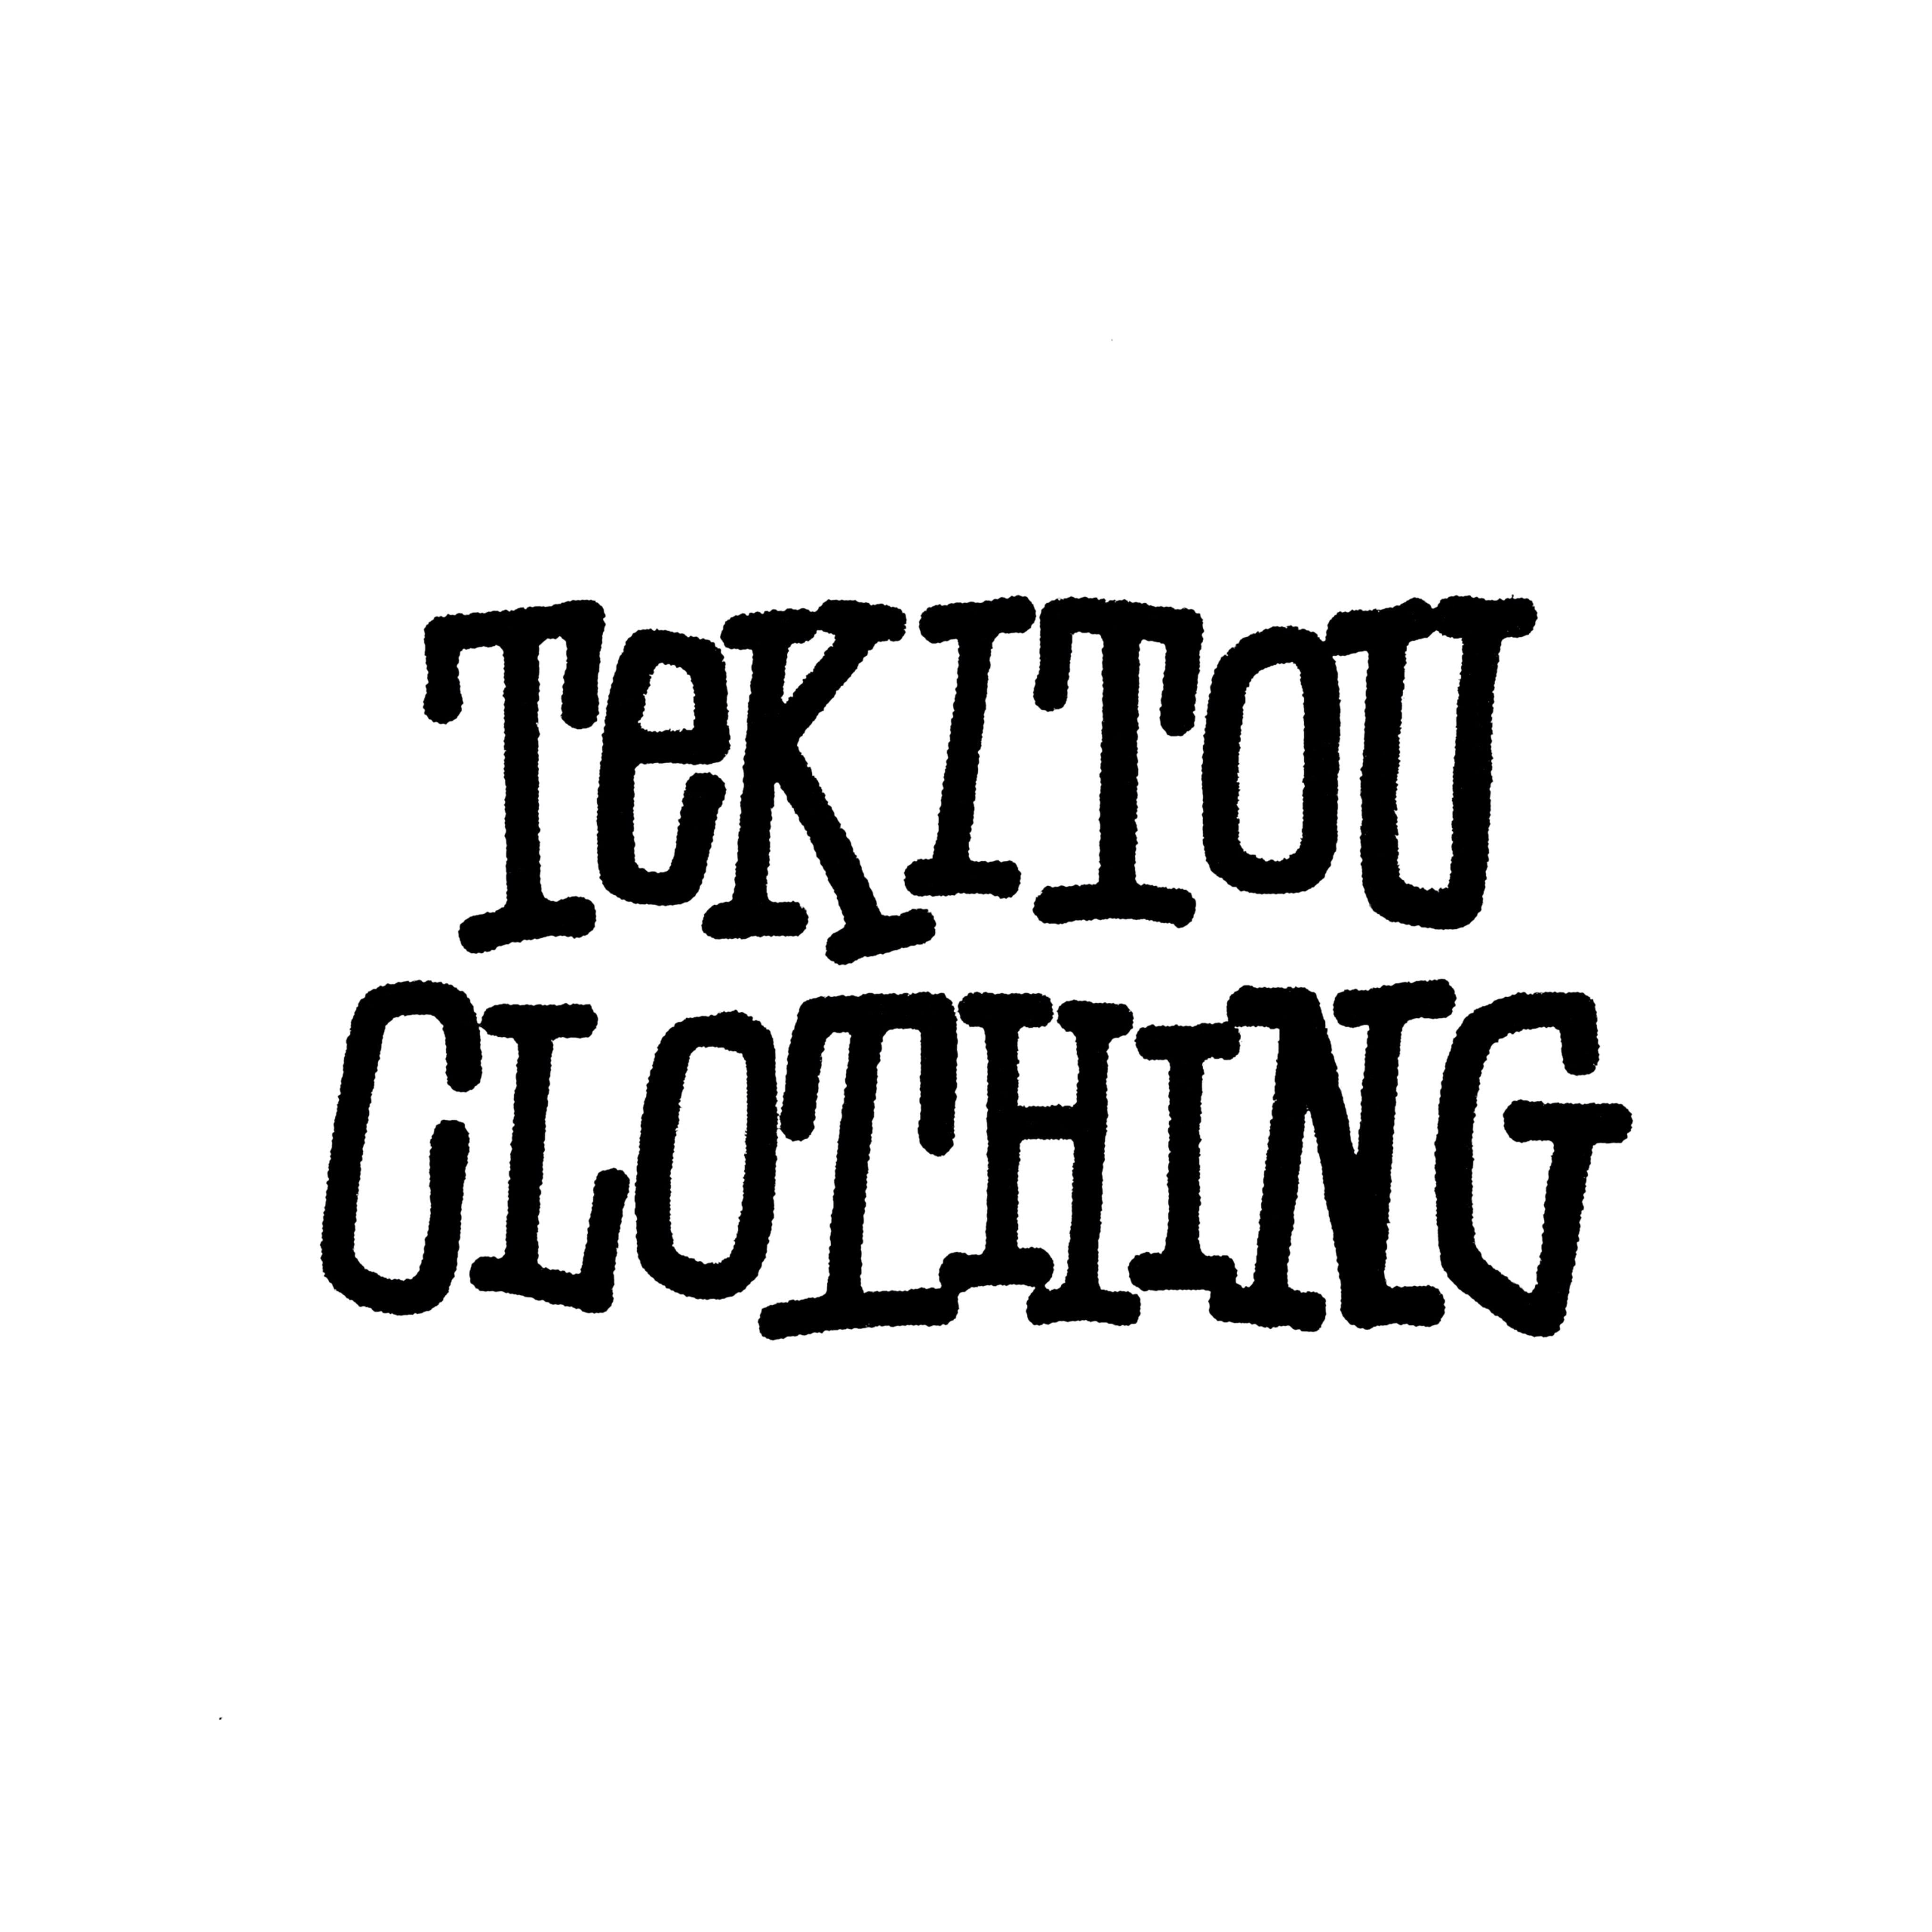 TEKITOU CLOTHING